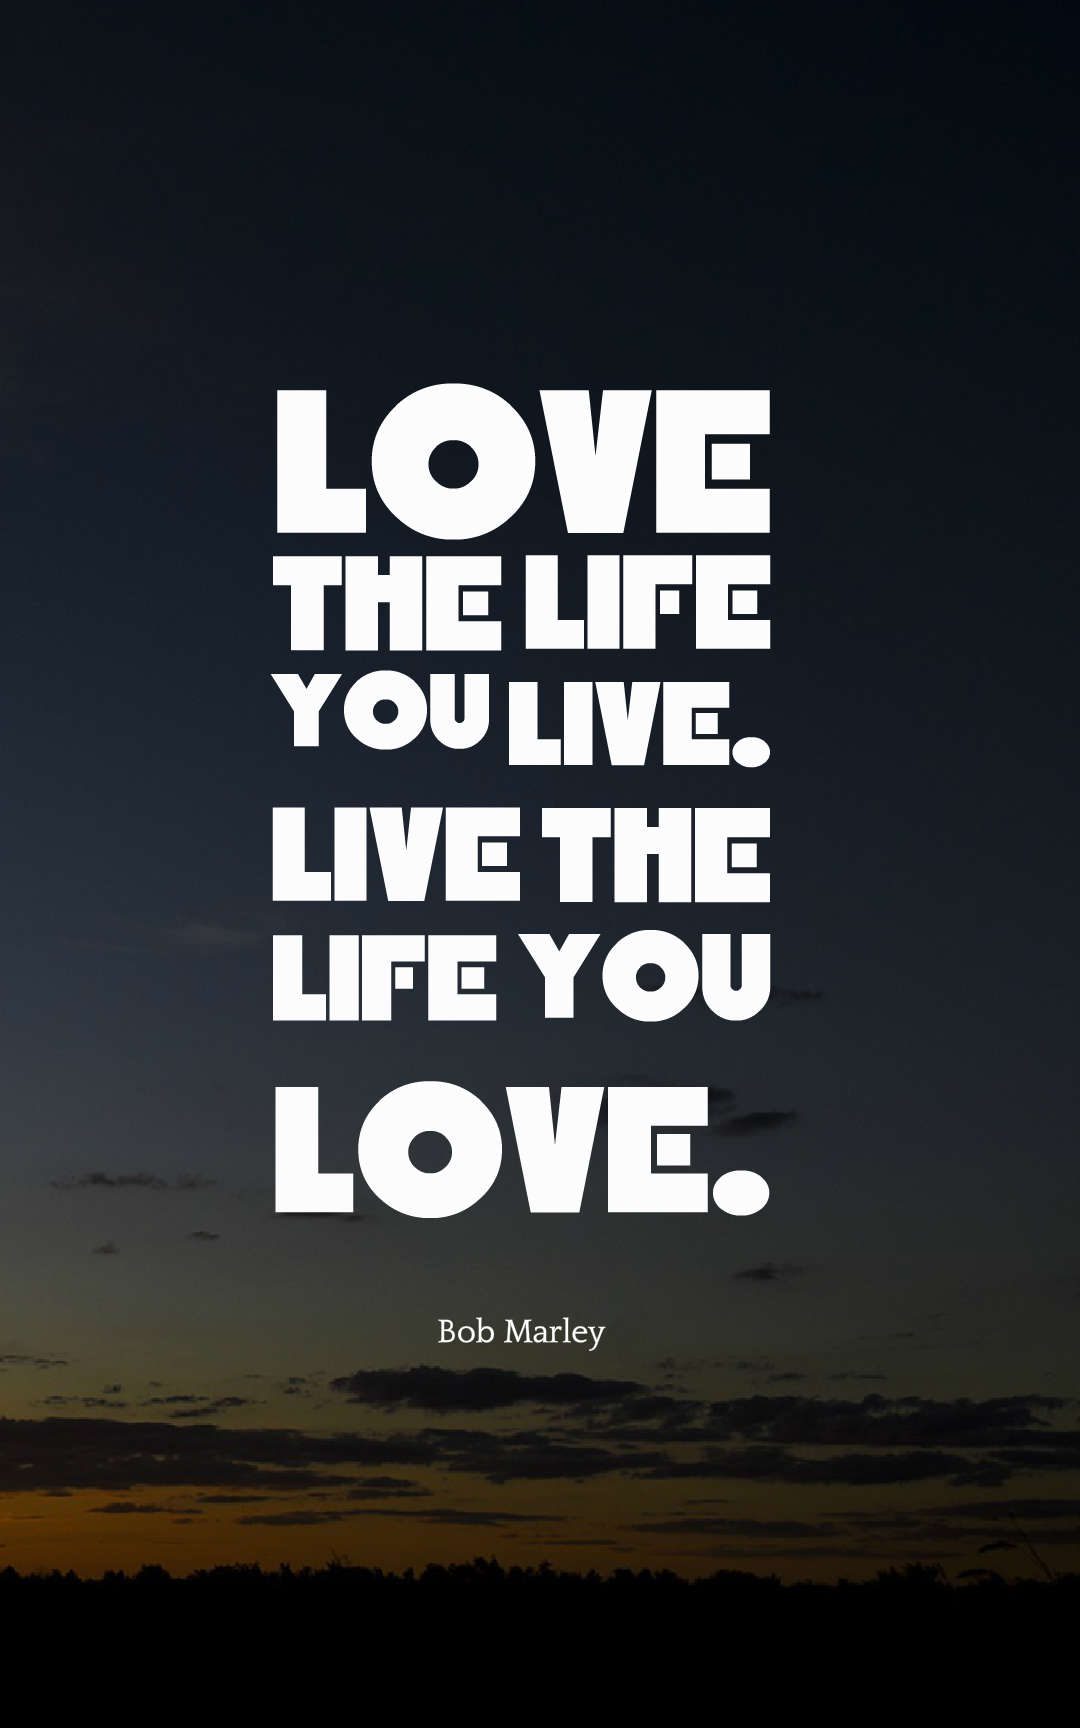 love the life you live. live the life you love.